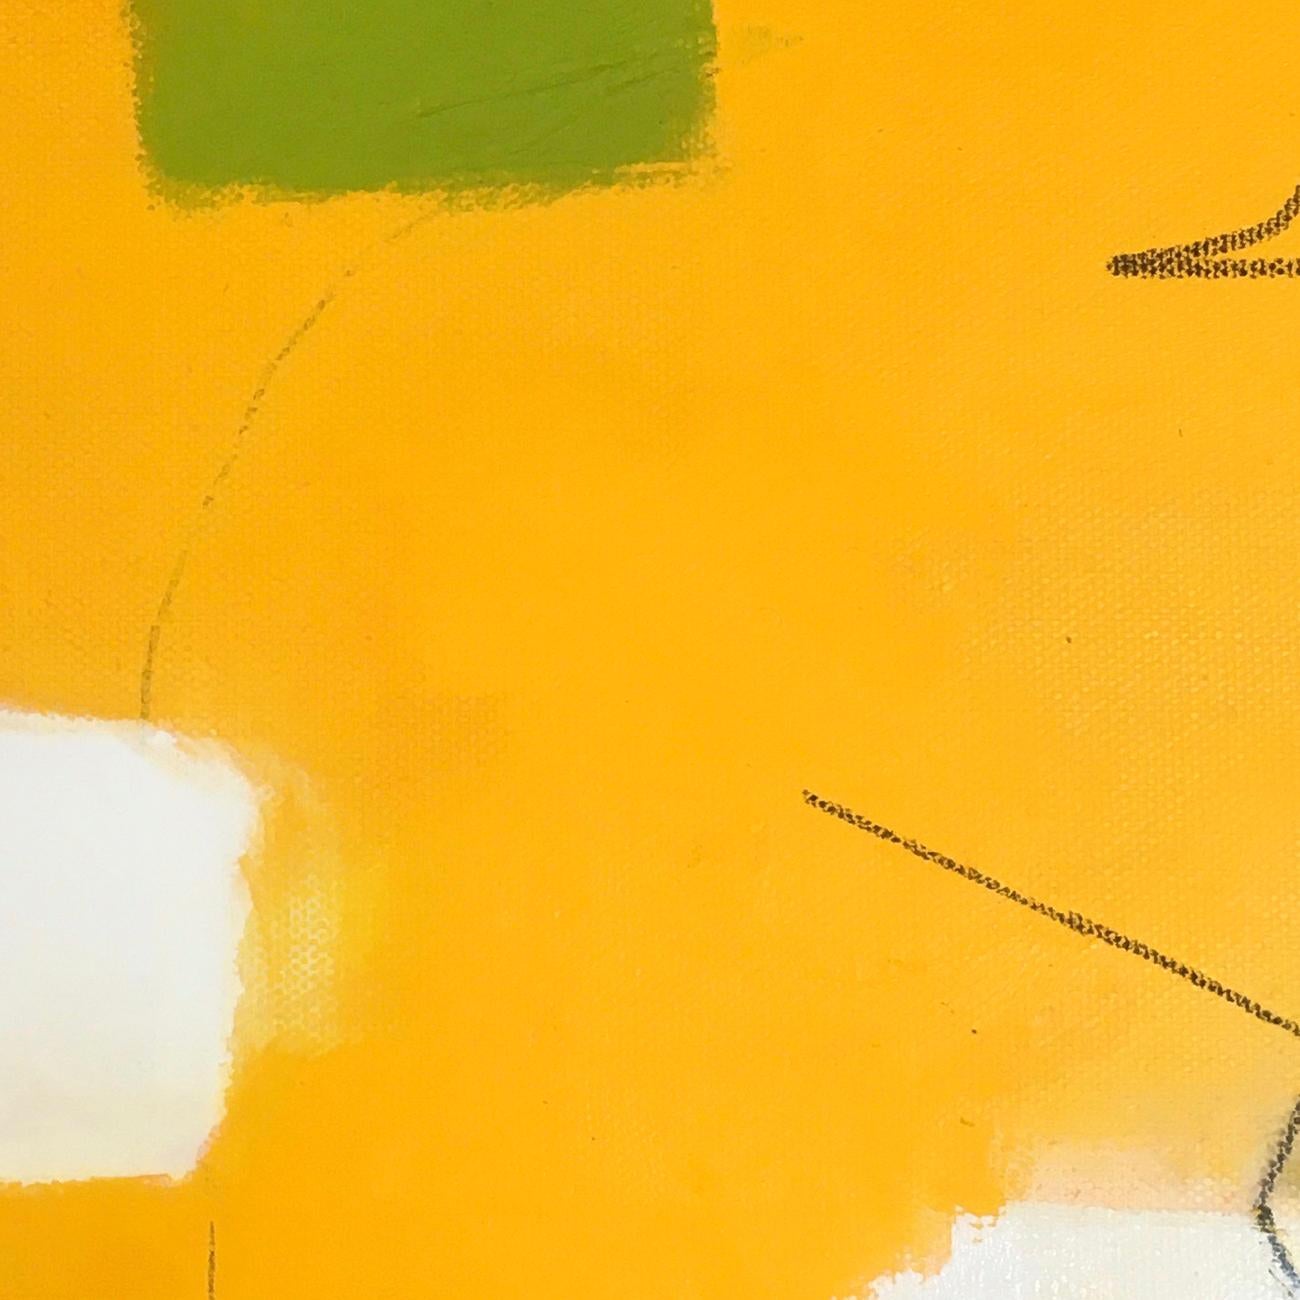 Between (Abstrakte Malerei)
Öl auf Leinwand - Ungerahmt. 

McCaggs Arbeiten sind von formalen Elementen wie Linie und Raum geprägt und beeinflusst, die ein grundlegendes ästhetisches Vokabular für ihre Kompositionen darstellen. 

Xanda McCagg ist